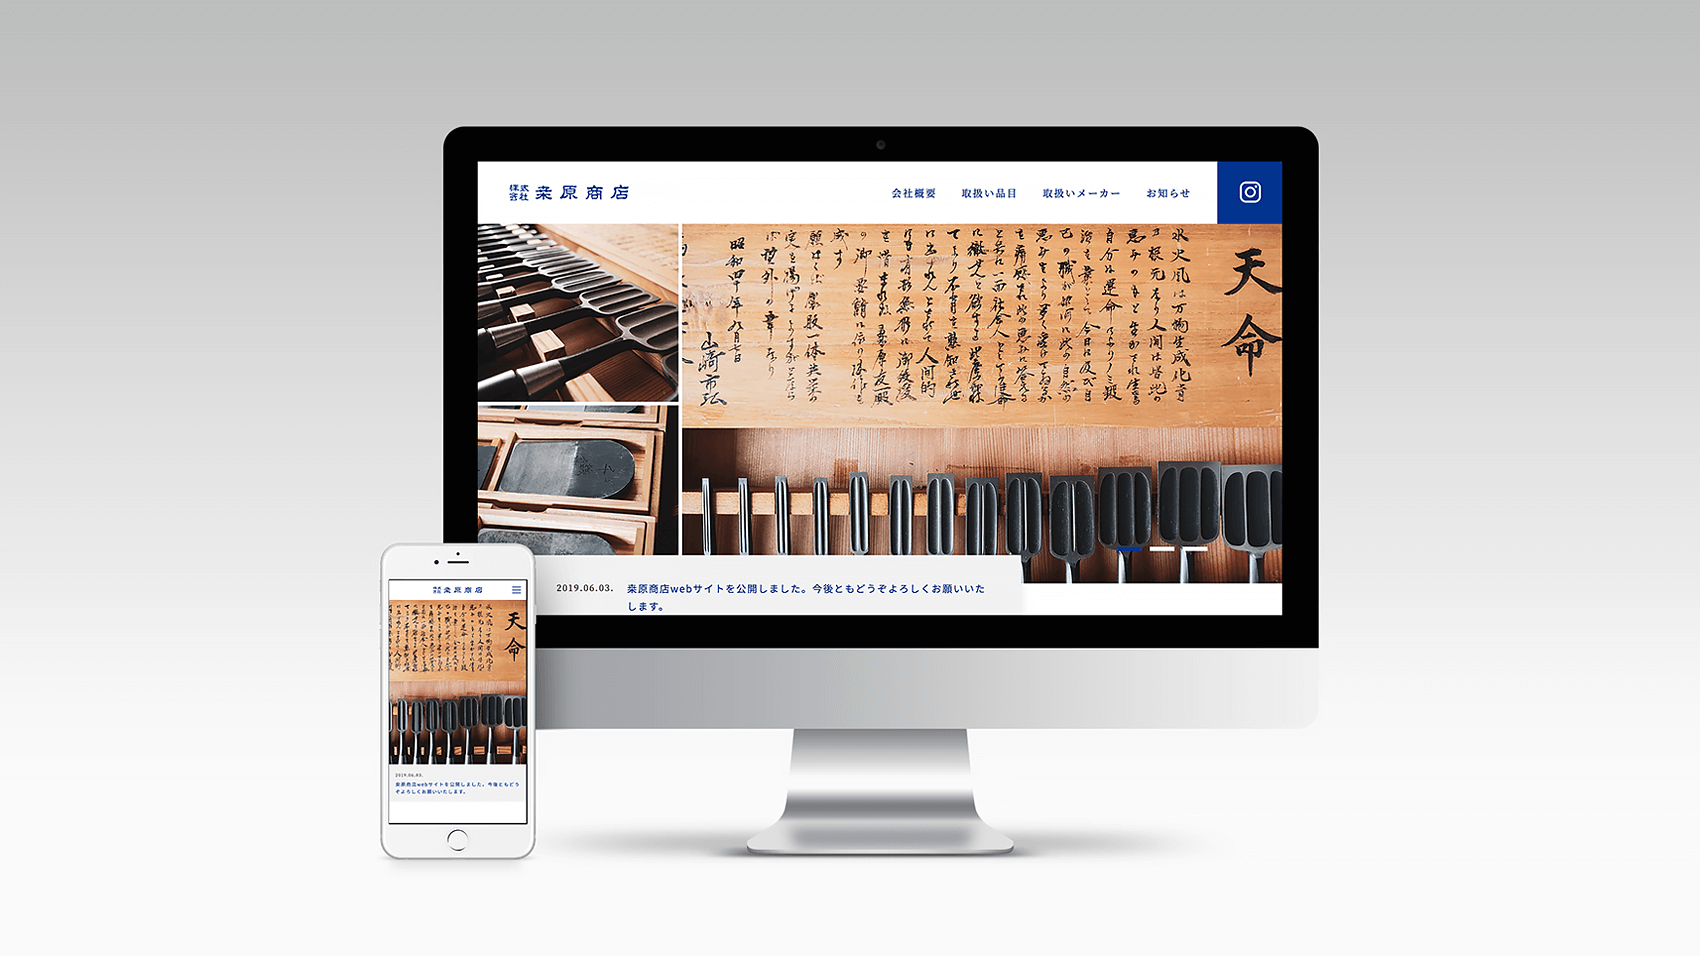 伝統ある道具たちを伝える大工道具卸「桒原商店」のwebサイトデザイン